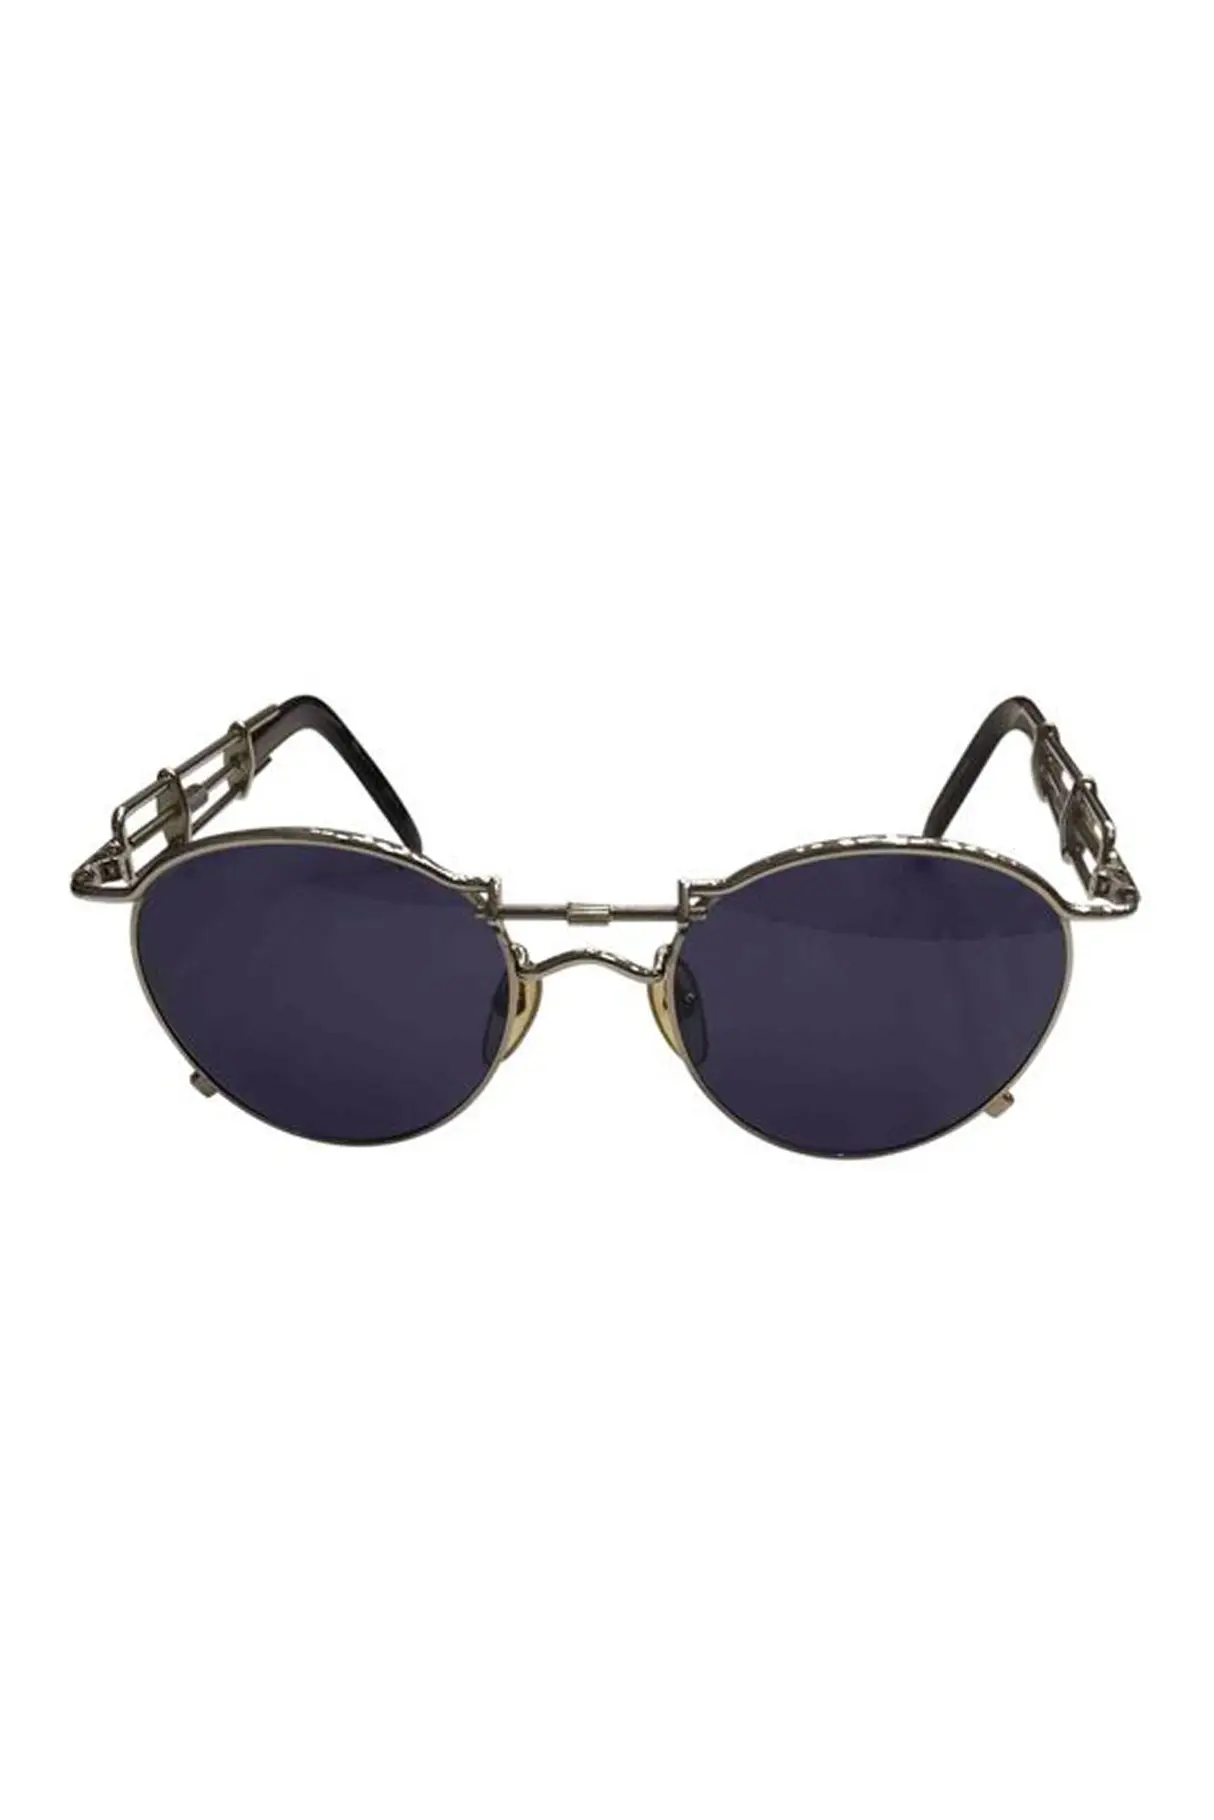 vintage-sunglasses.jpg